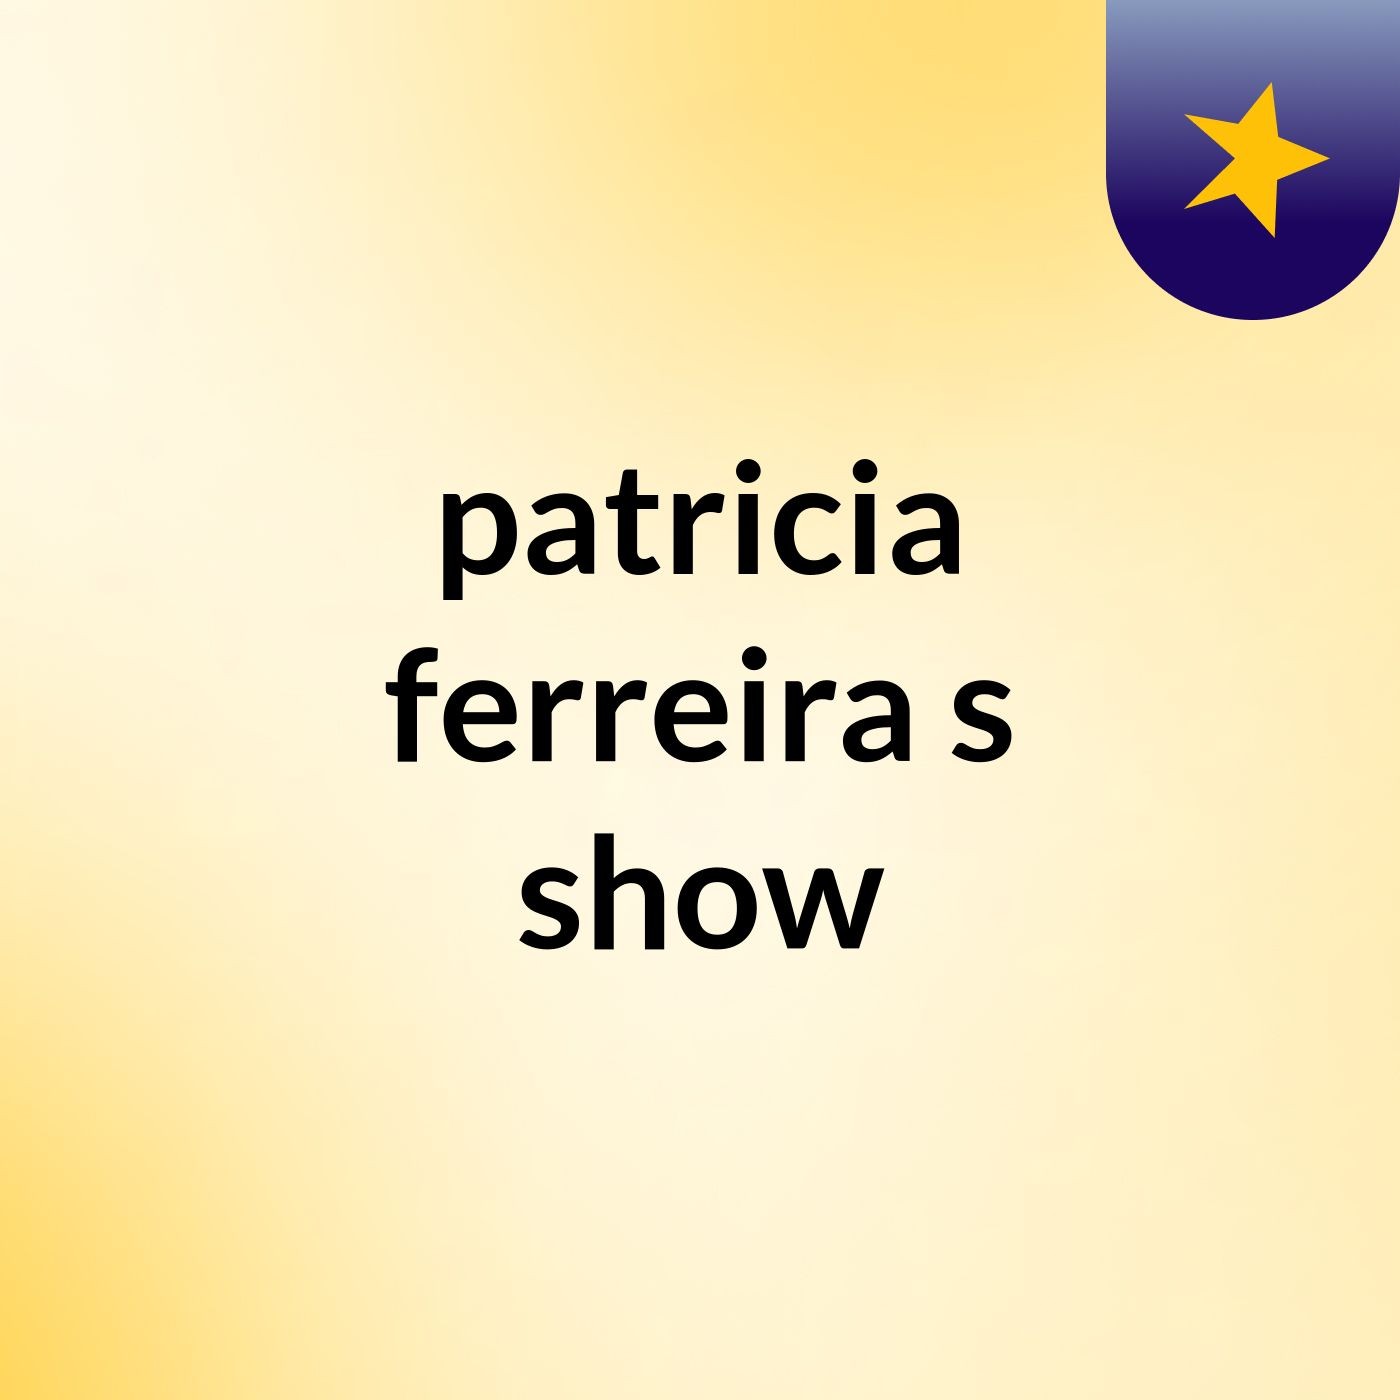 patricia ferreira's show